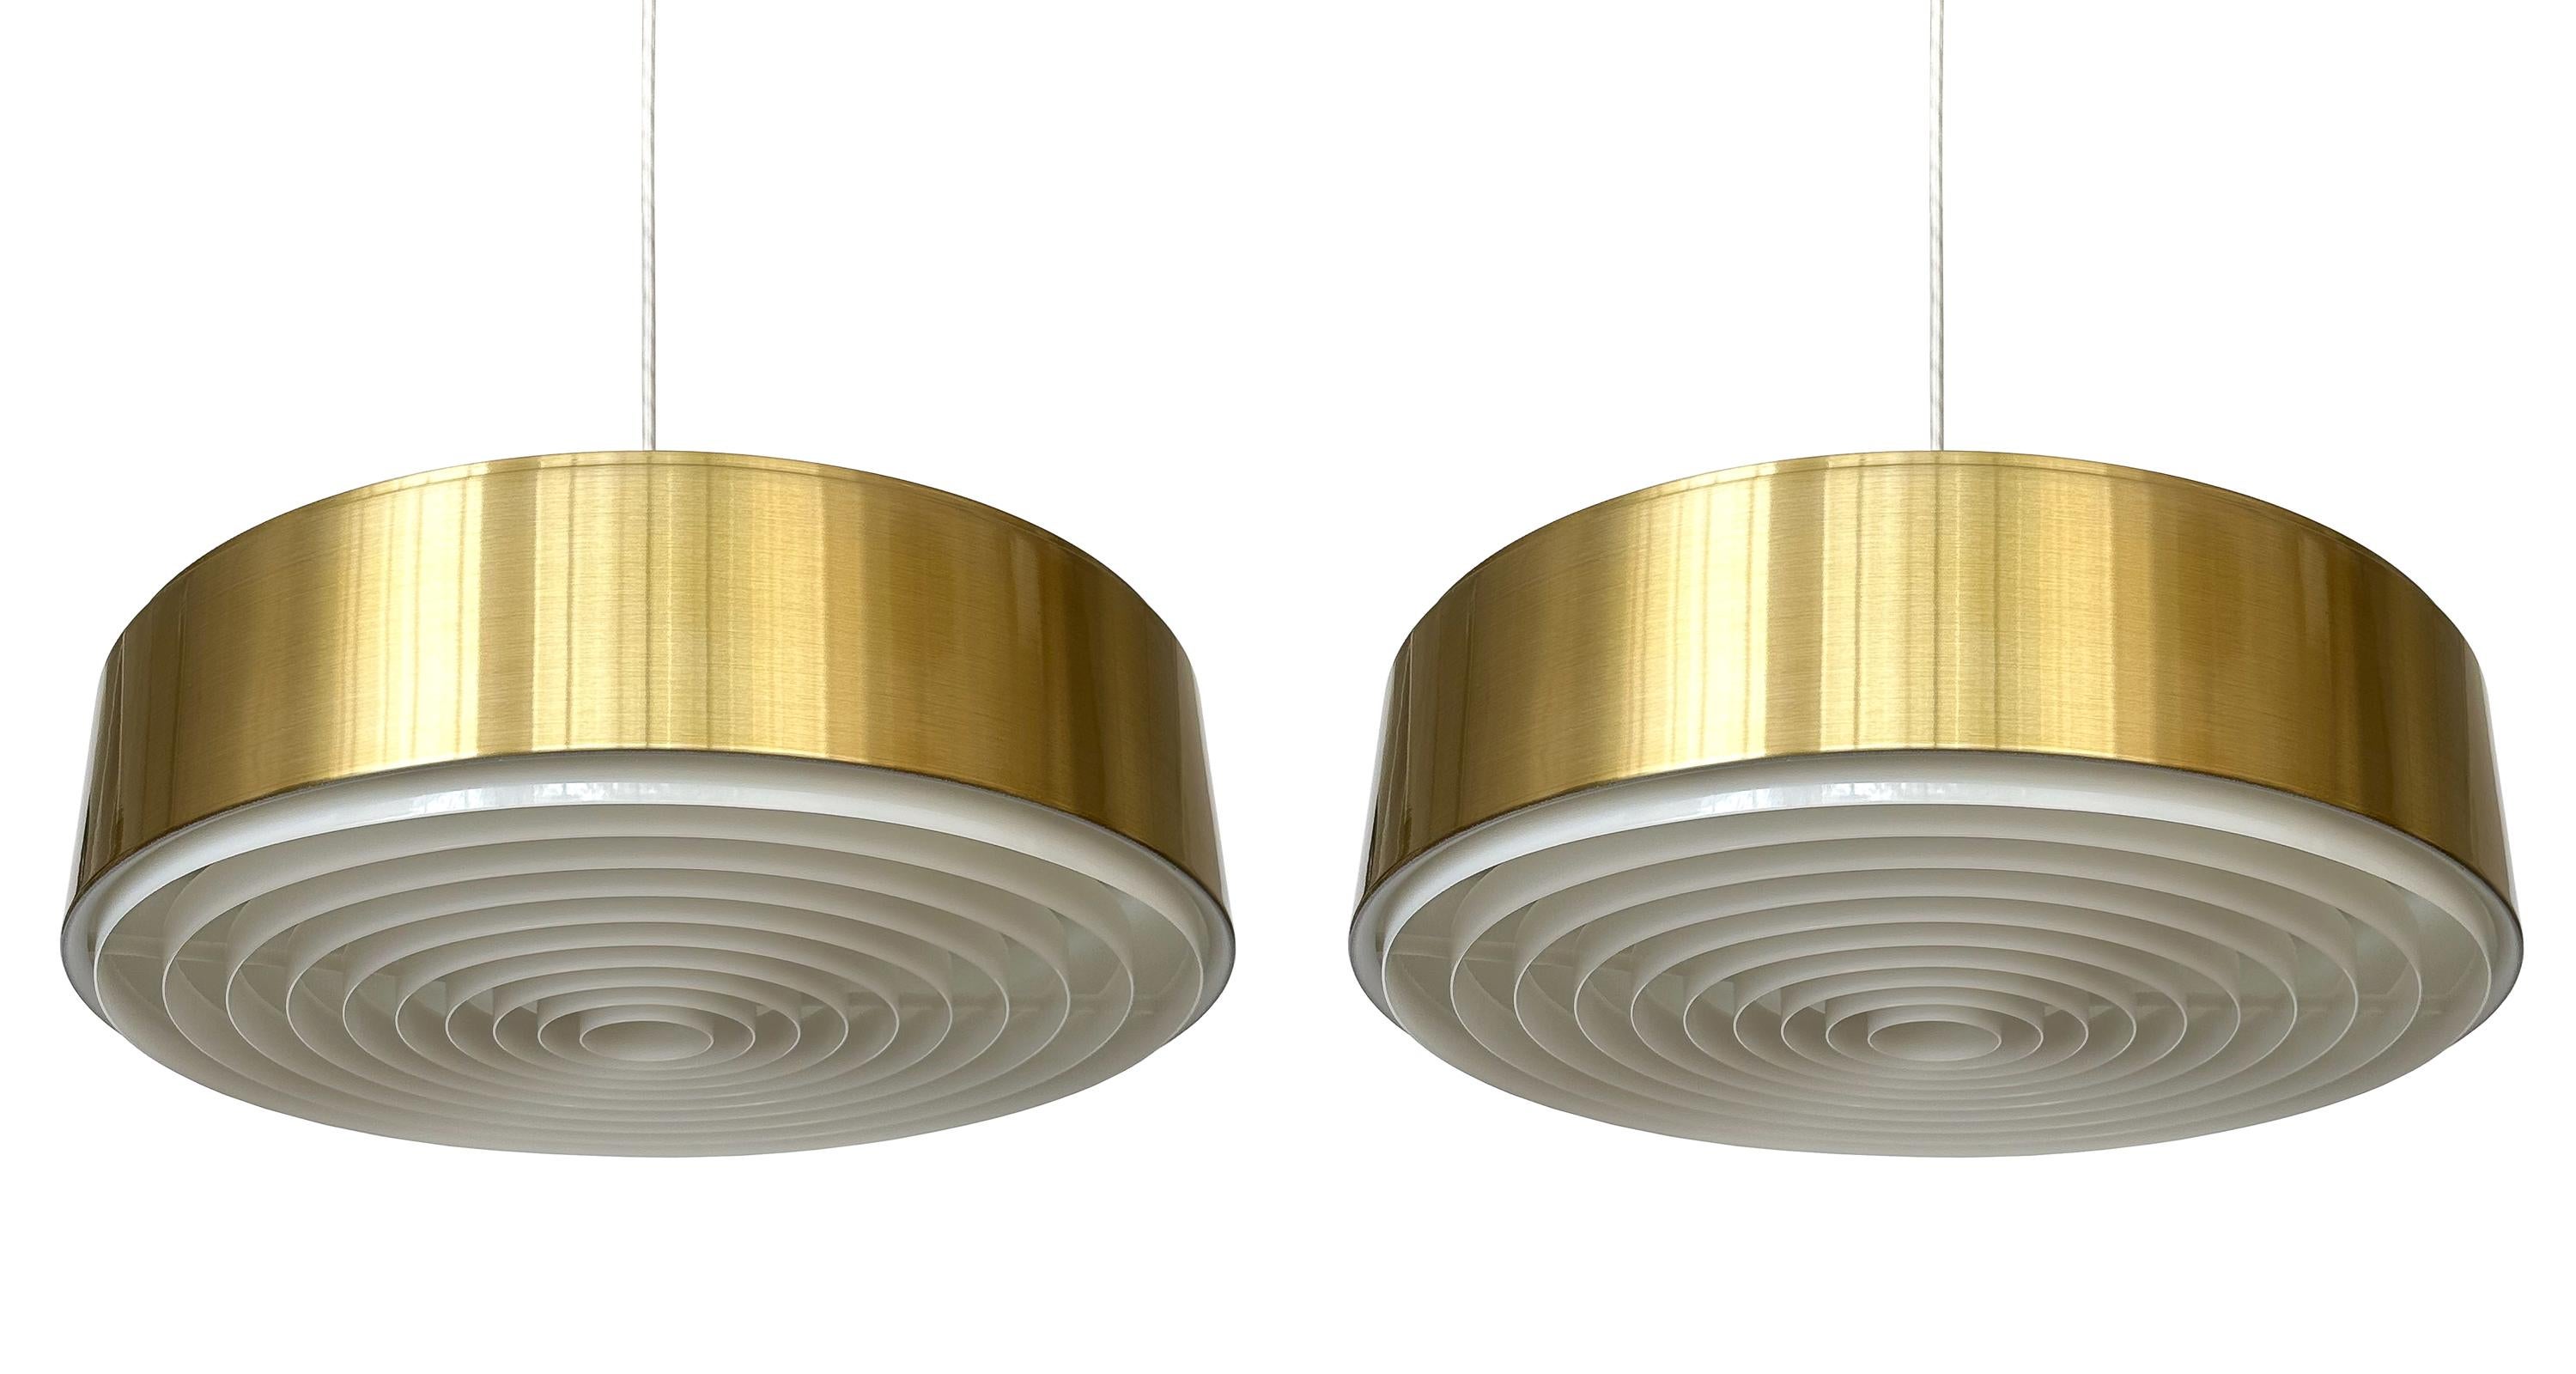 La sophistication subtile de la lampe suspendue de Sven Middelboe pour Nordisk Solar, un joyau rare de l'âge d'or du design danois, vers les années 1960, rehausse votre intérieur. Modèle 74212, avec sa finition en laiton satiné sur de l'aluminium